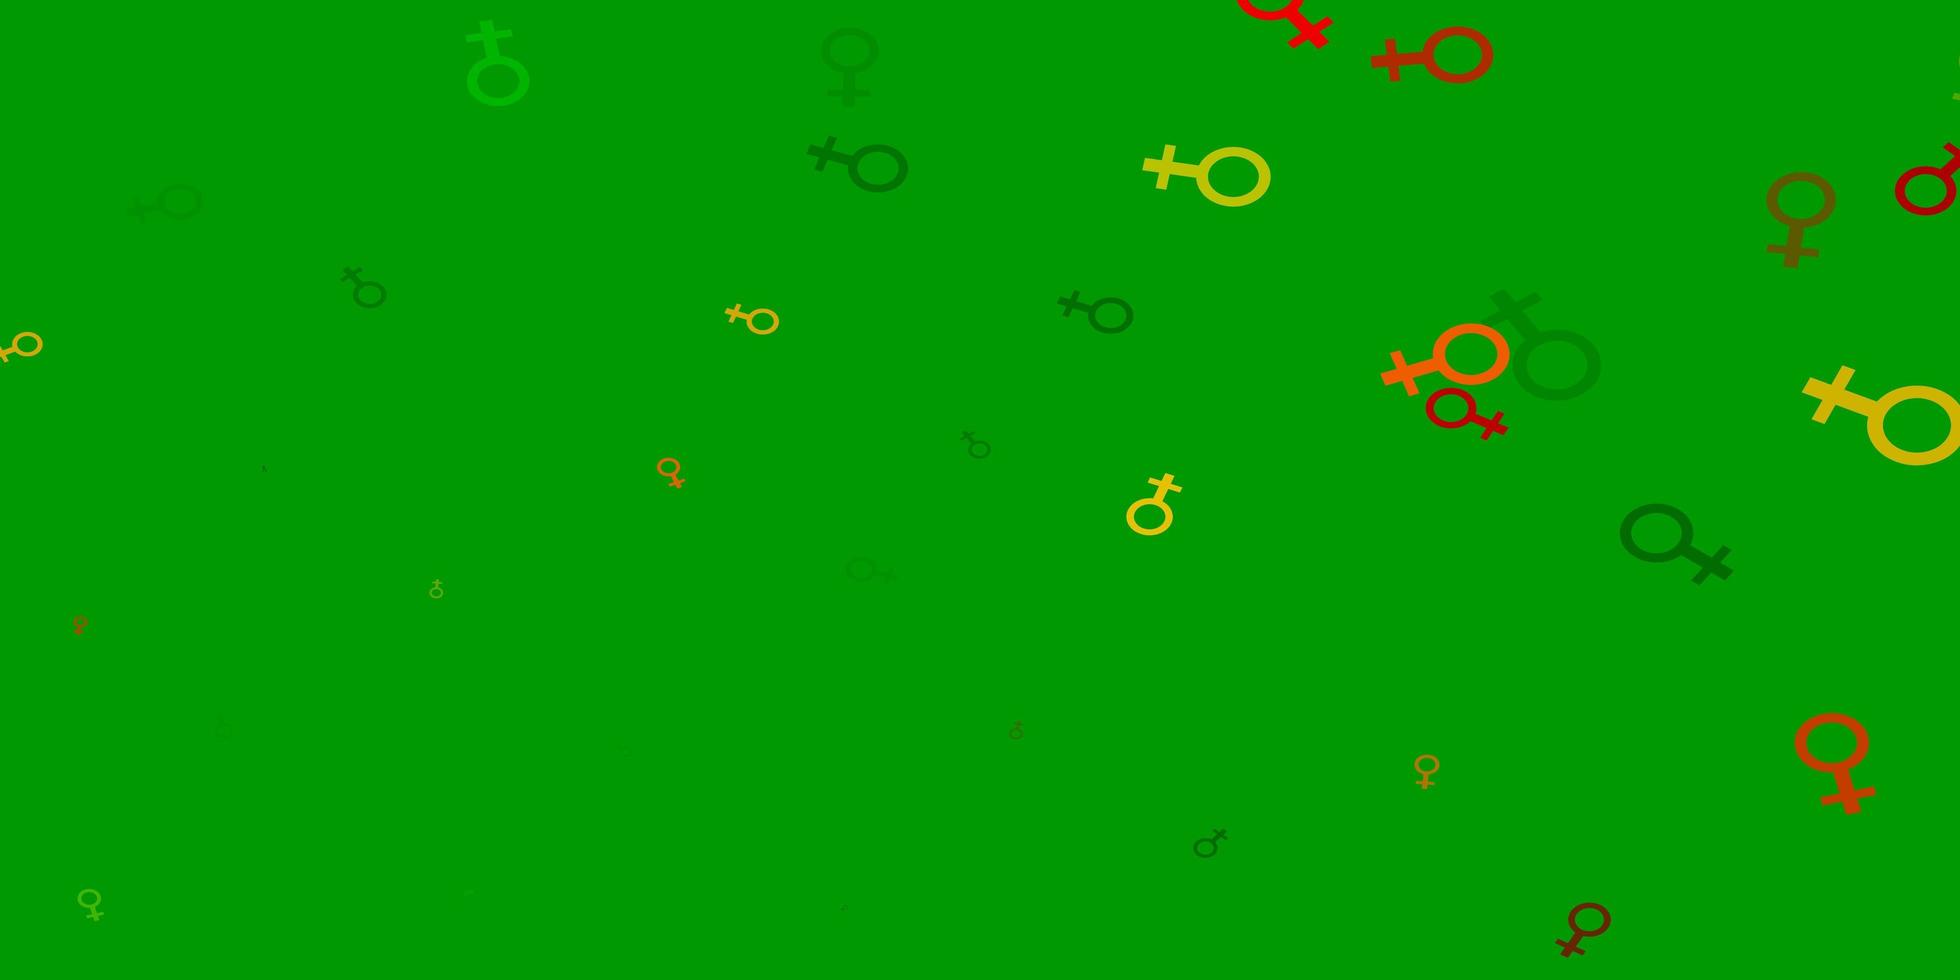 hellgrüner, gelber Vektorhintergrund mit Frauensymbolen. vektor